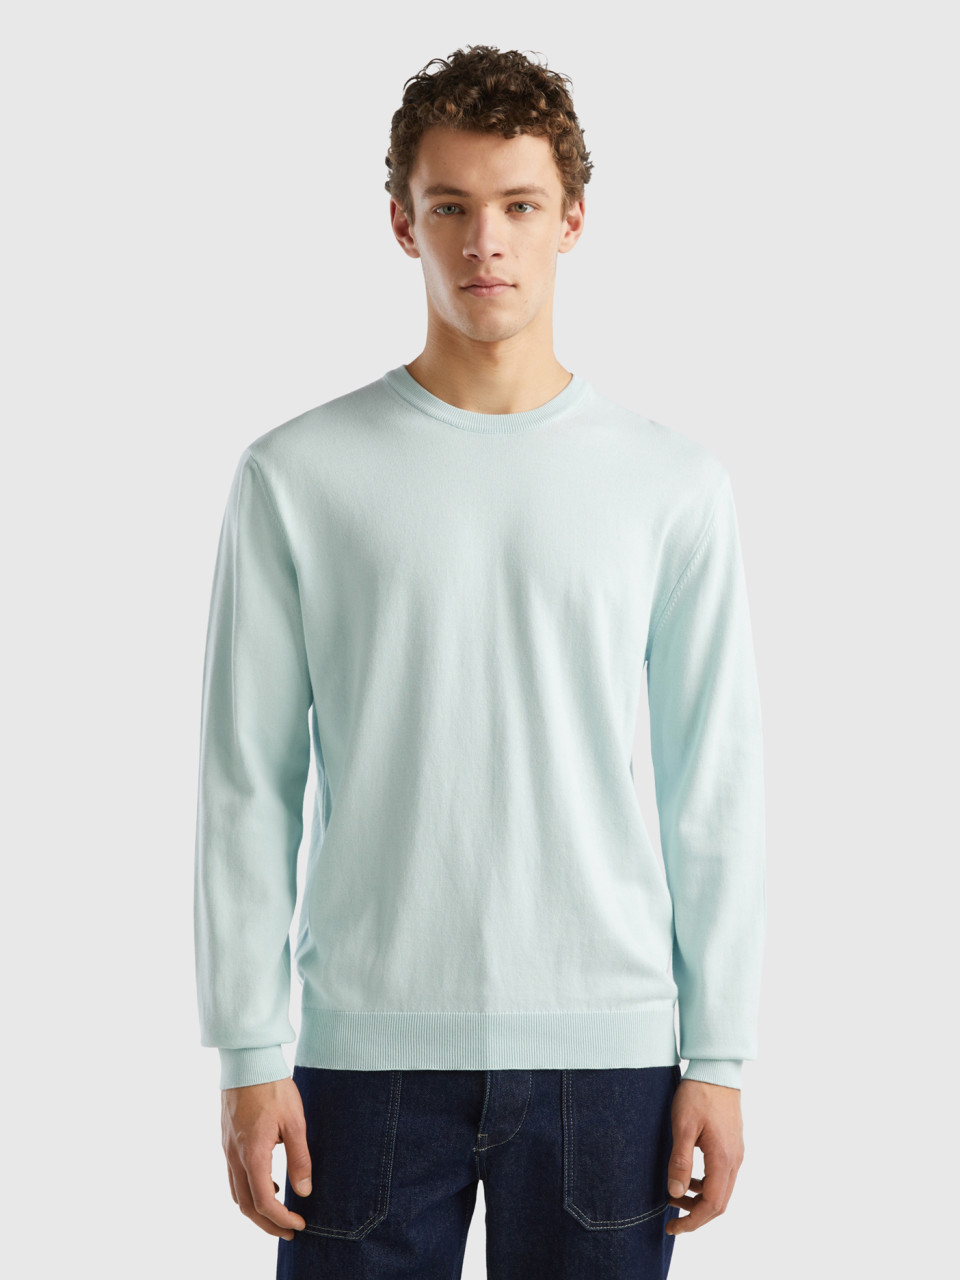 Benetton, Crew Neck Sweater In 100% Cotton, Aqua, Men